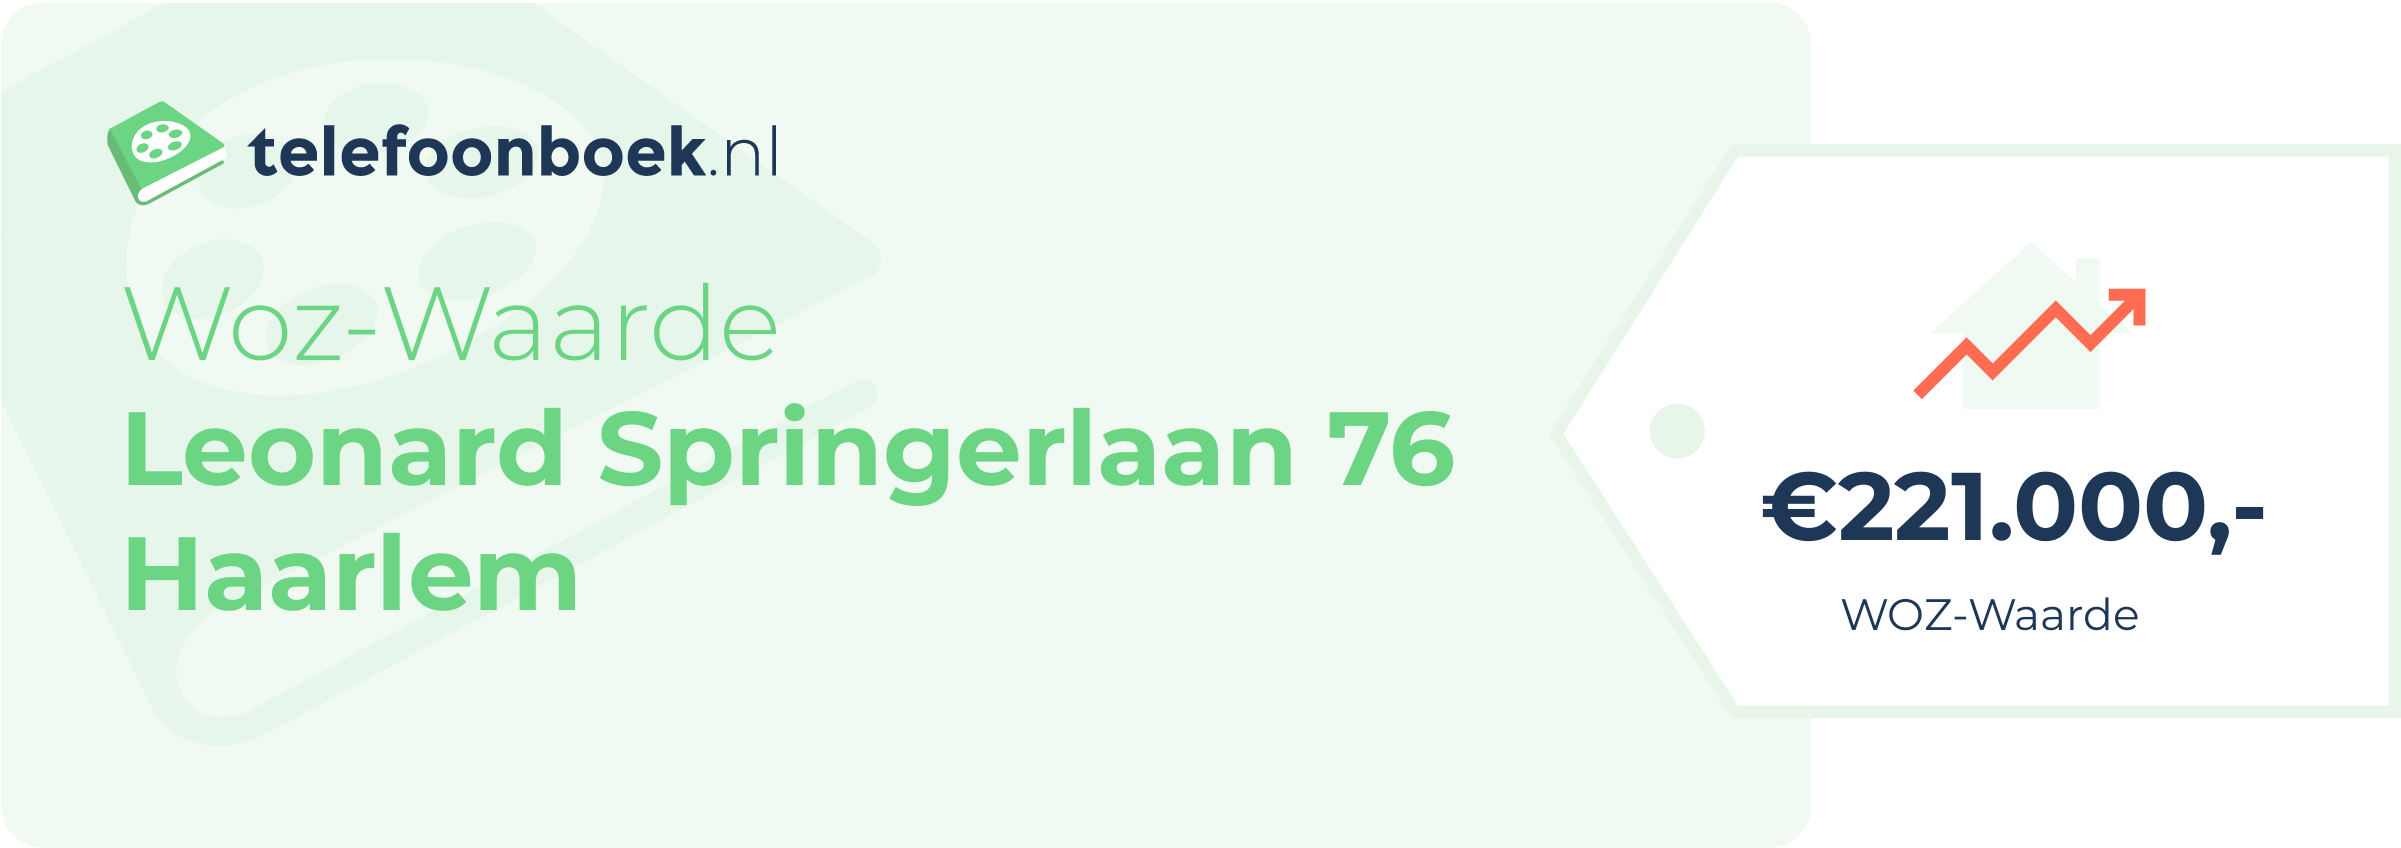 WOZ-waarde Leonard Springerlaan 76 Haarlem